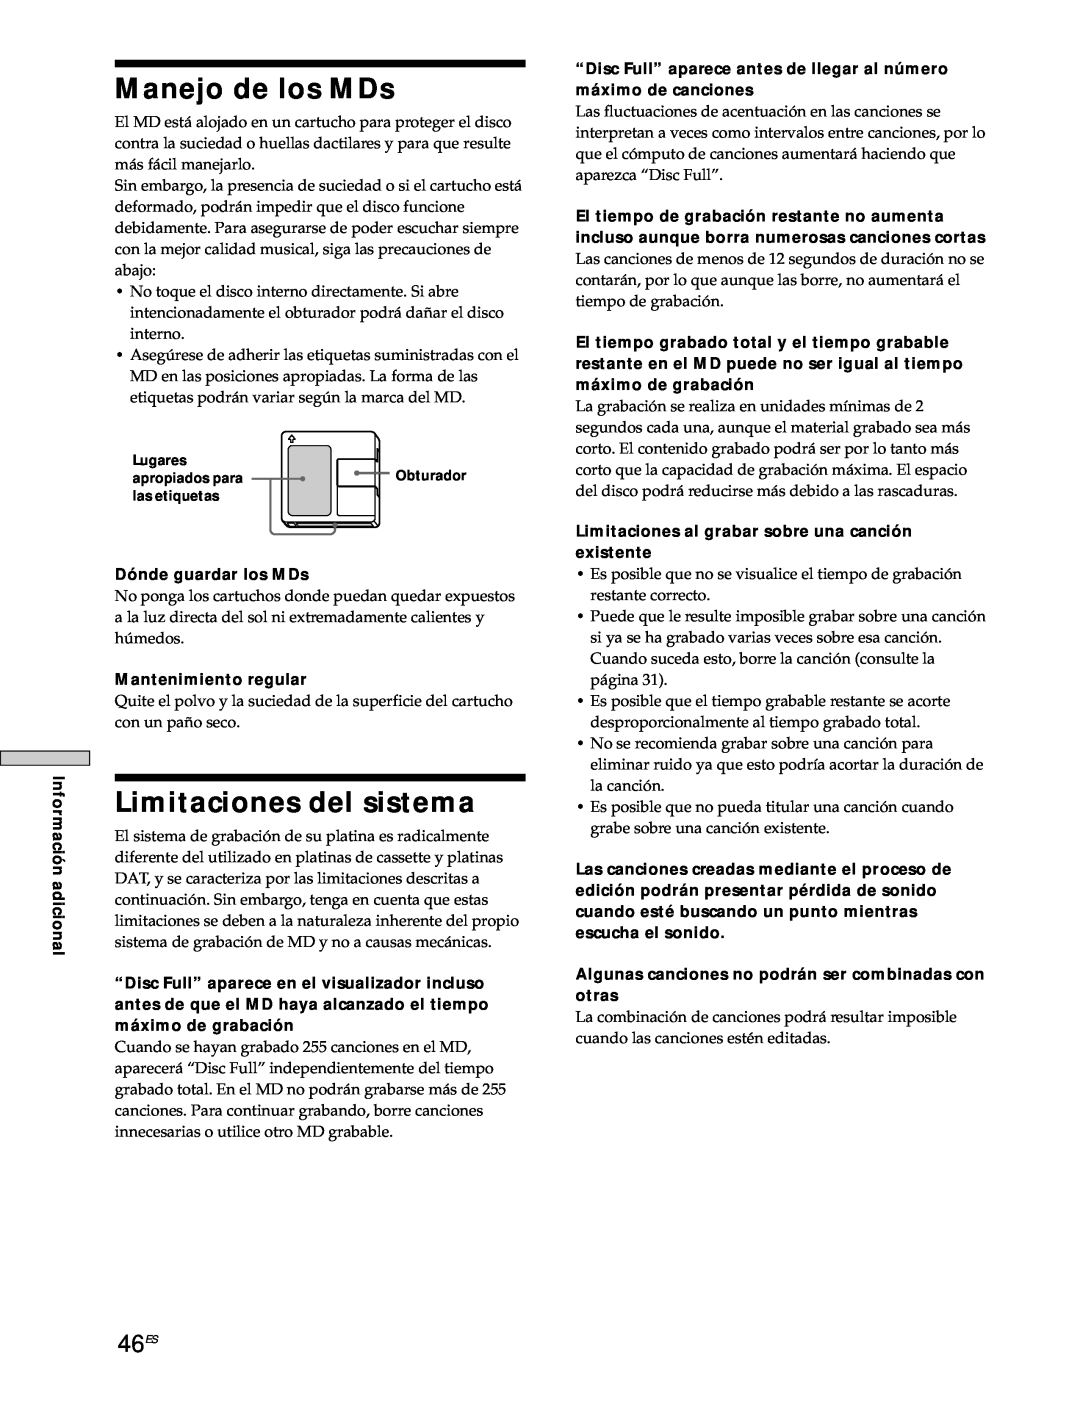 Sony MDS-JE530 manual Manejo de los MDs, Limitaciones del sistema, 46ES 